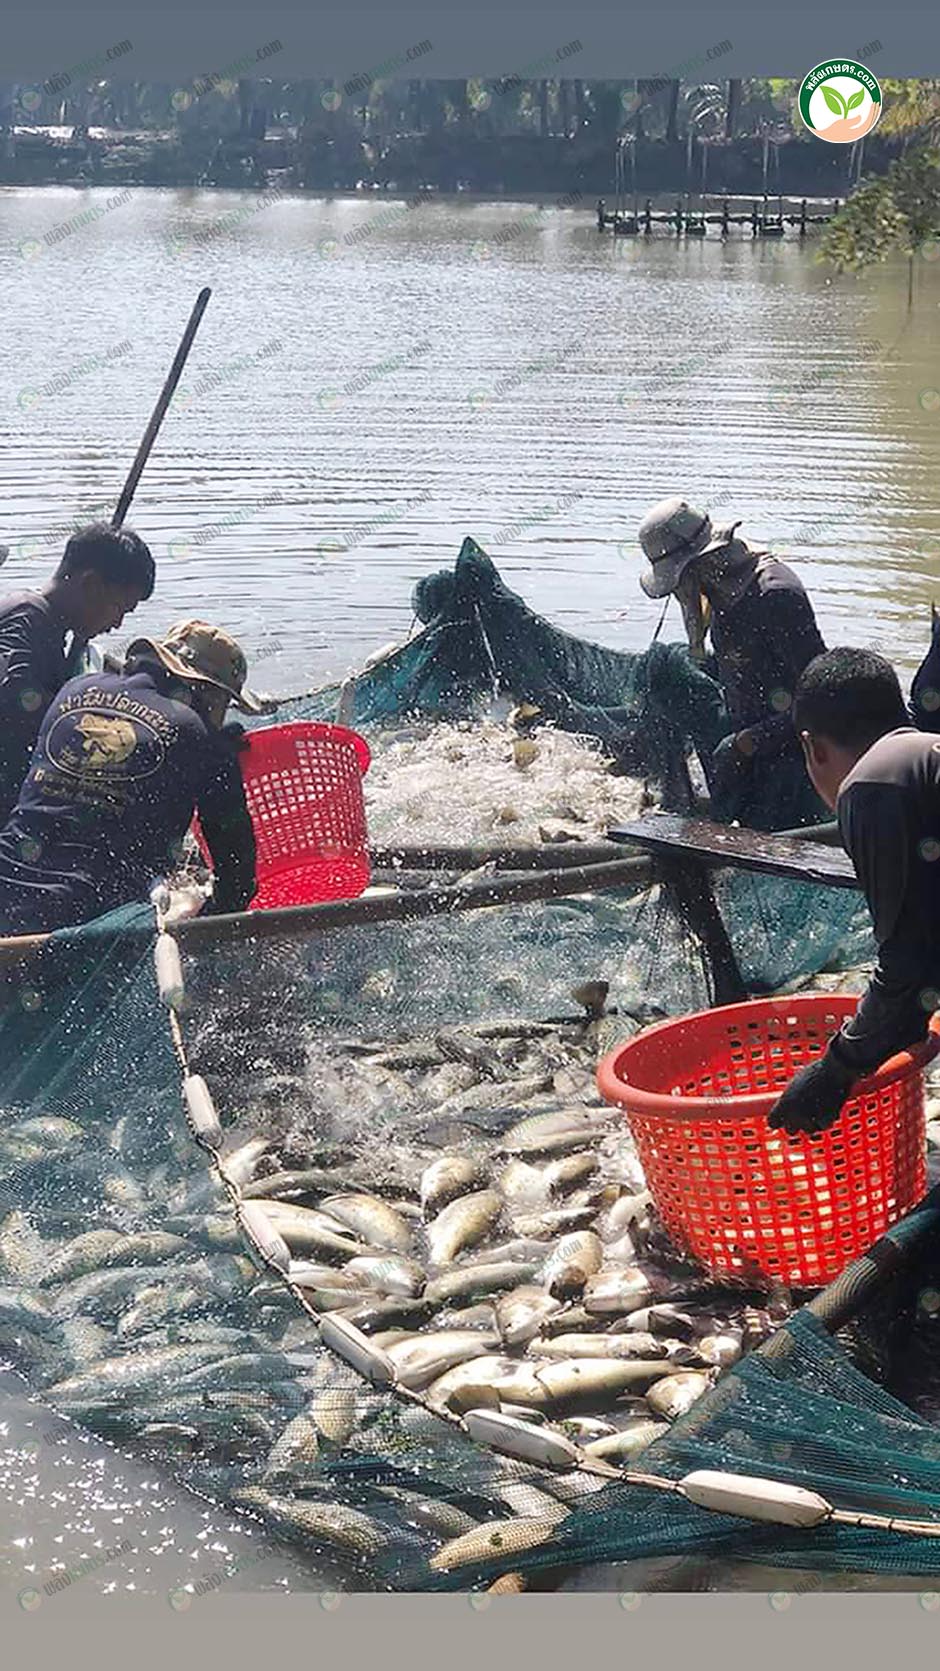 2.คนงานกำลังจับปลากะพง